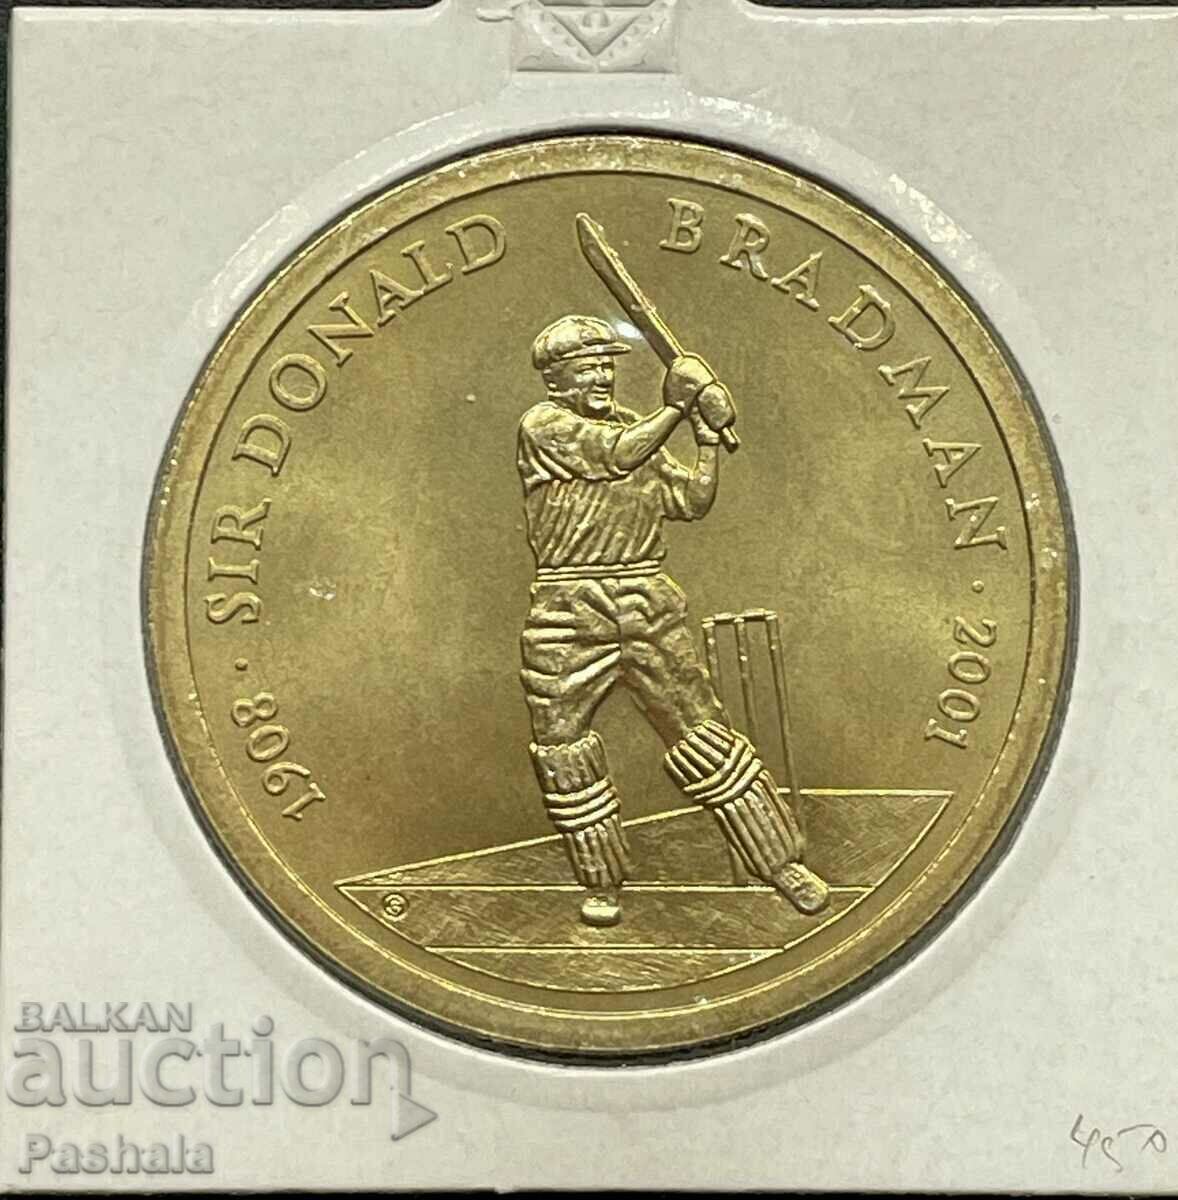 Australia $5 2001